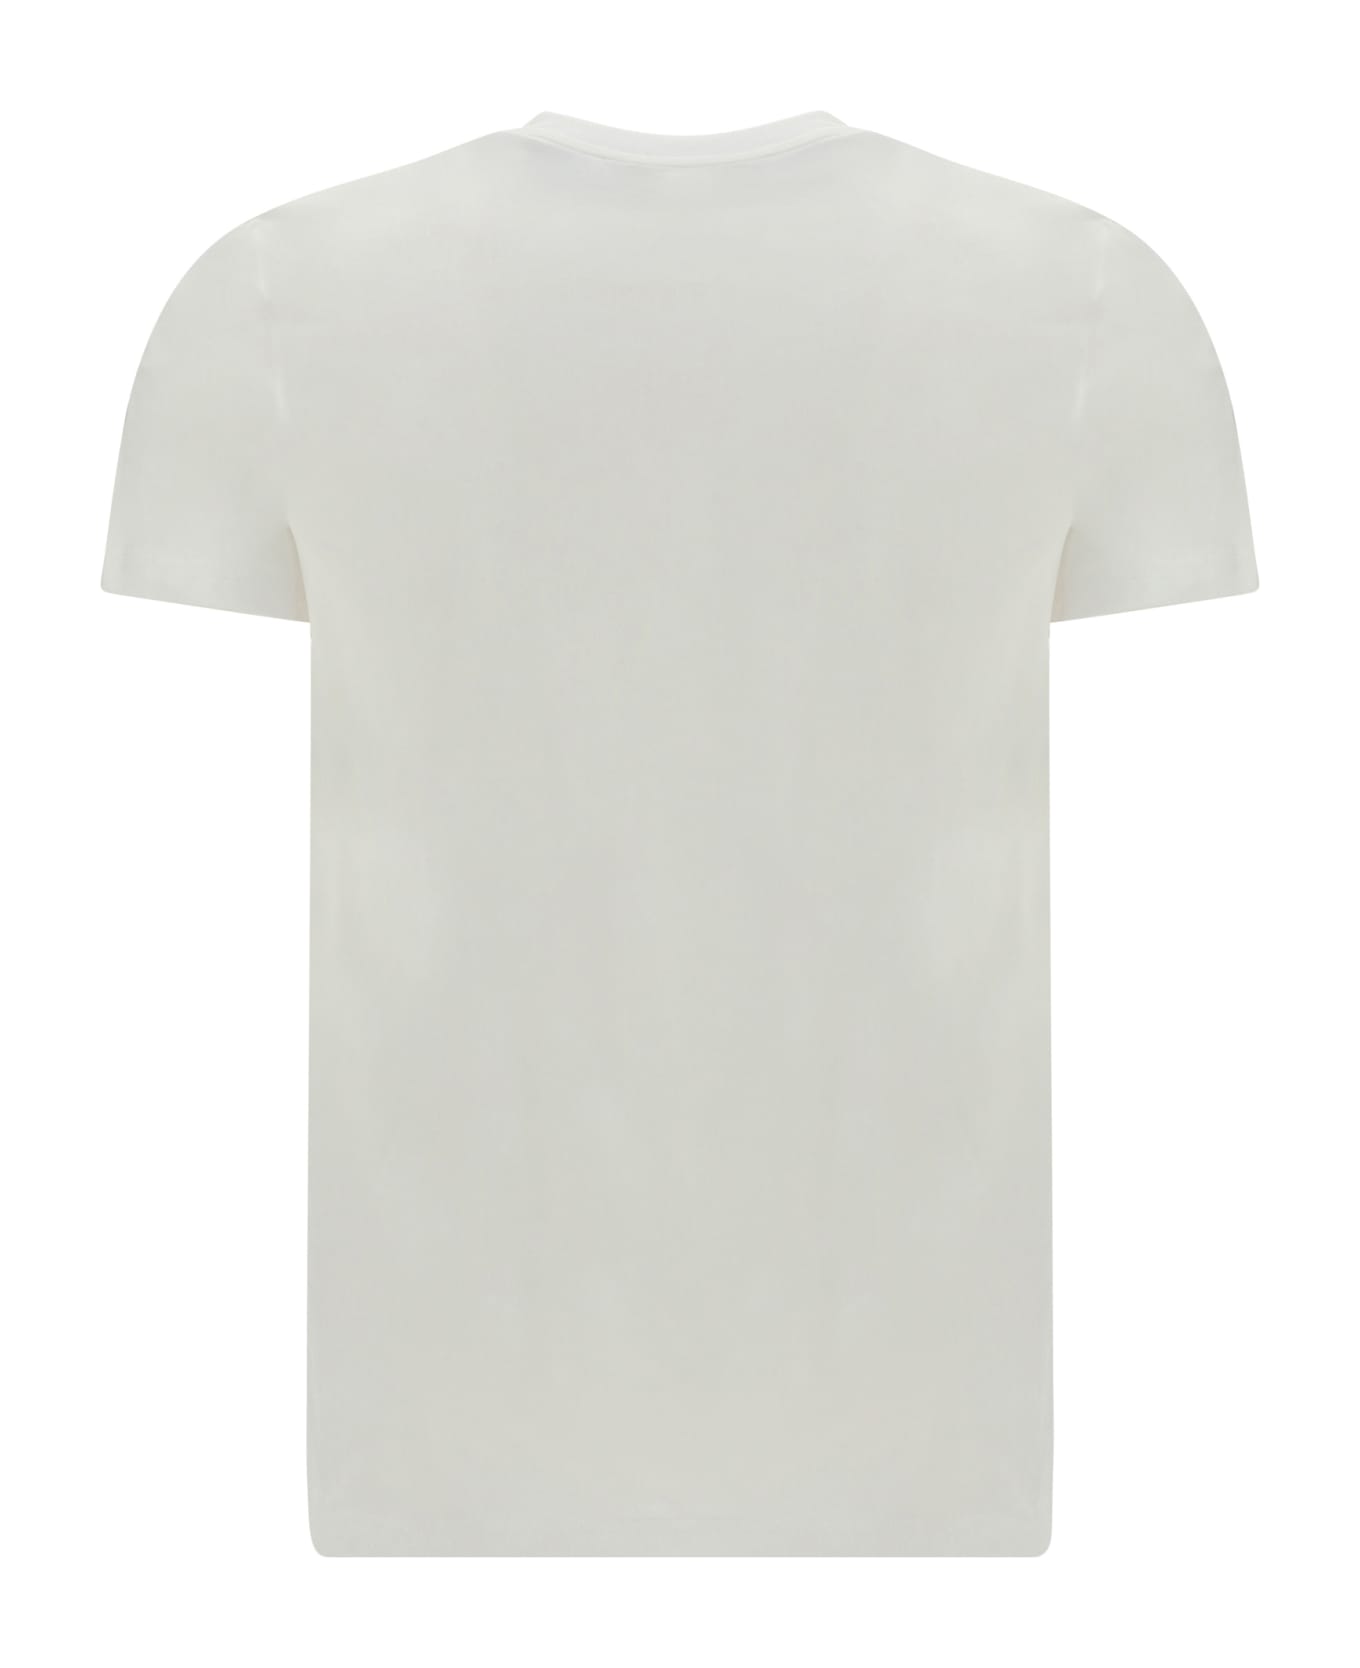 Moschino T-shirt - Bianco